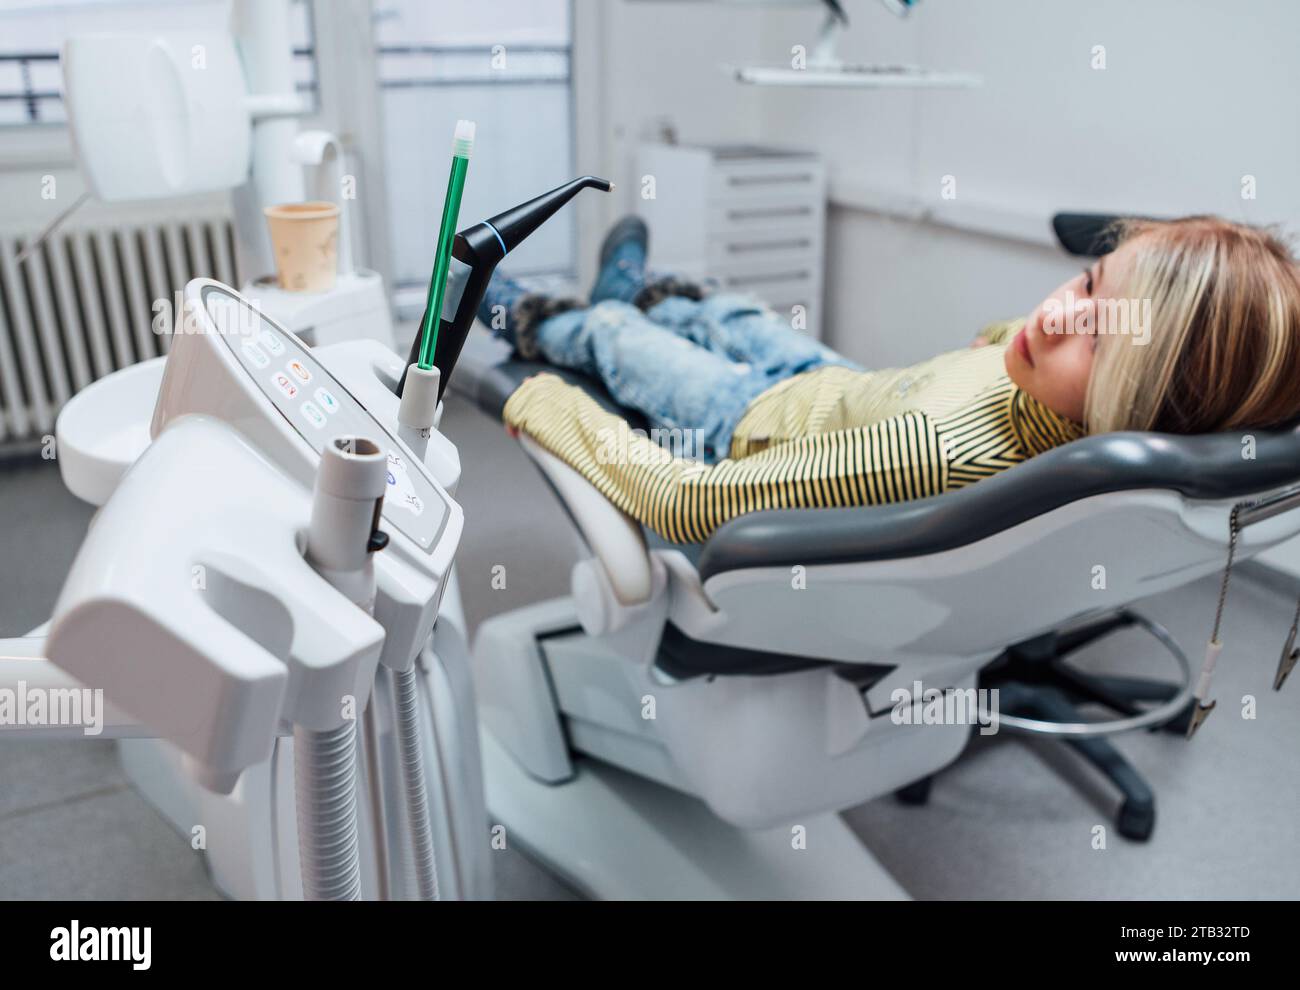 Medizinischer Stuhl Vakuuminstrumente Foto. Kleines Mädchen, das nach zahnärztlichen Eingriffen auf dem Stomatologie-Klinikstuhl sitzt. Gesundheitswesen, Kindergesundheit Stockfoto